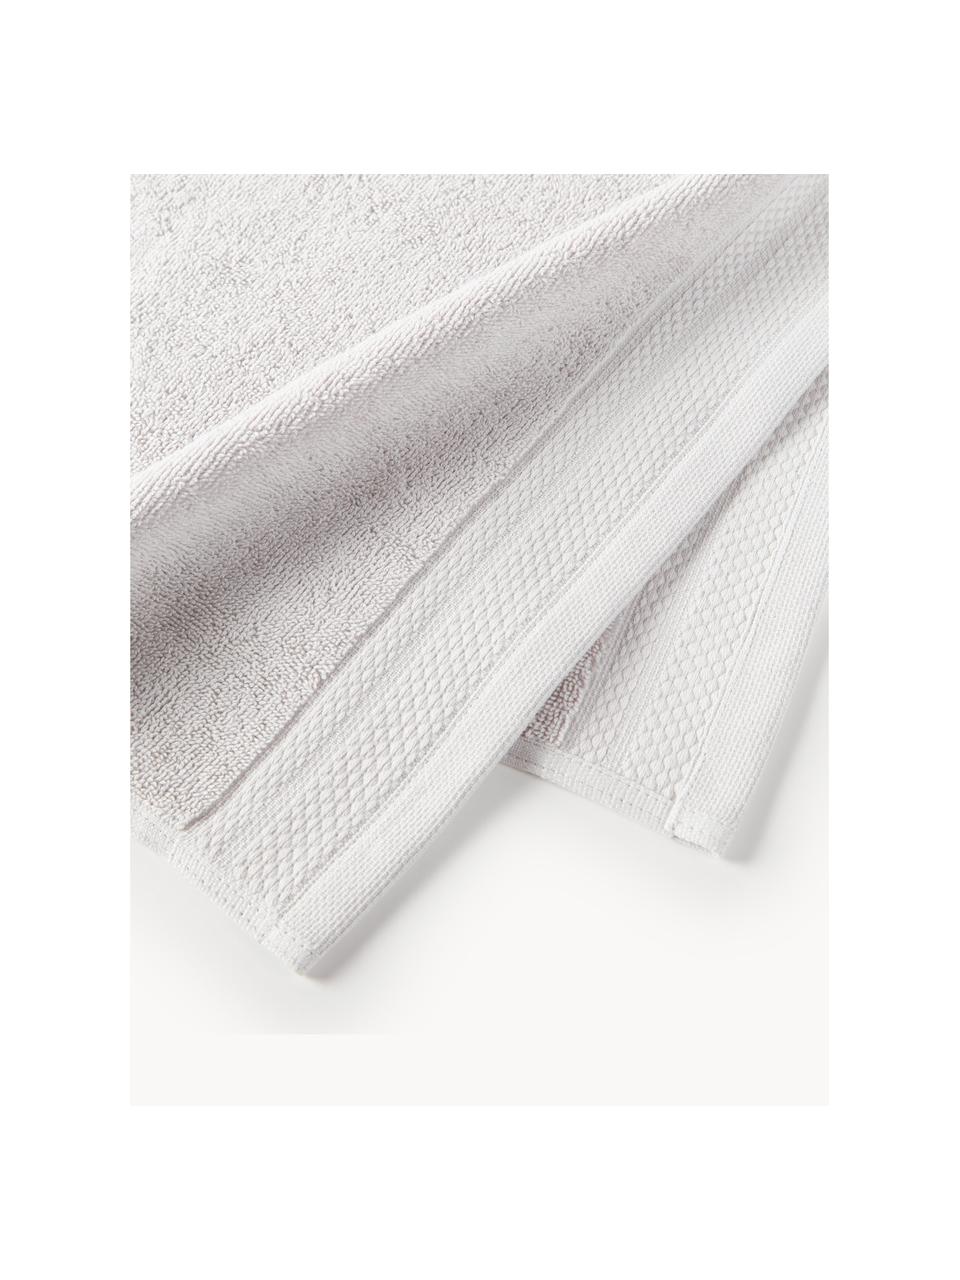 Komplet ręczników z bawełny organicznej Premium, różne rozmiary, Jasny szary, 3 elem. (ręcznik dla gości, ręcznik do rąk, ręcznik kąpielowy)